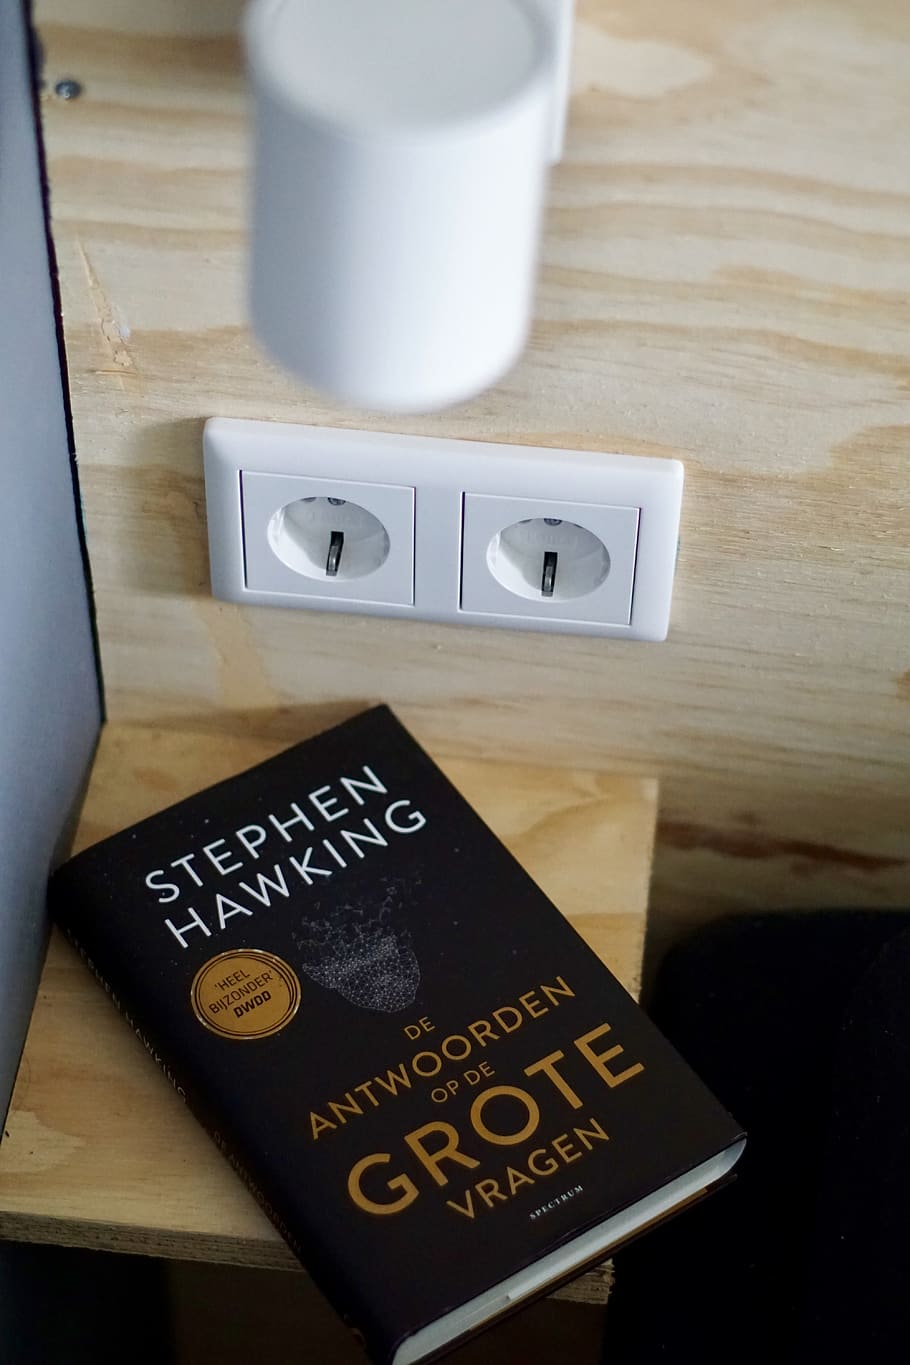 De Antwoorden Op De Grote Vragen by Stephen Hawking book, lamp, HD wallpaper